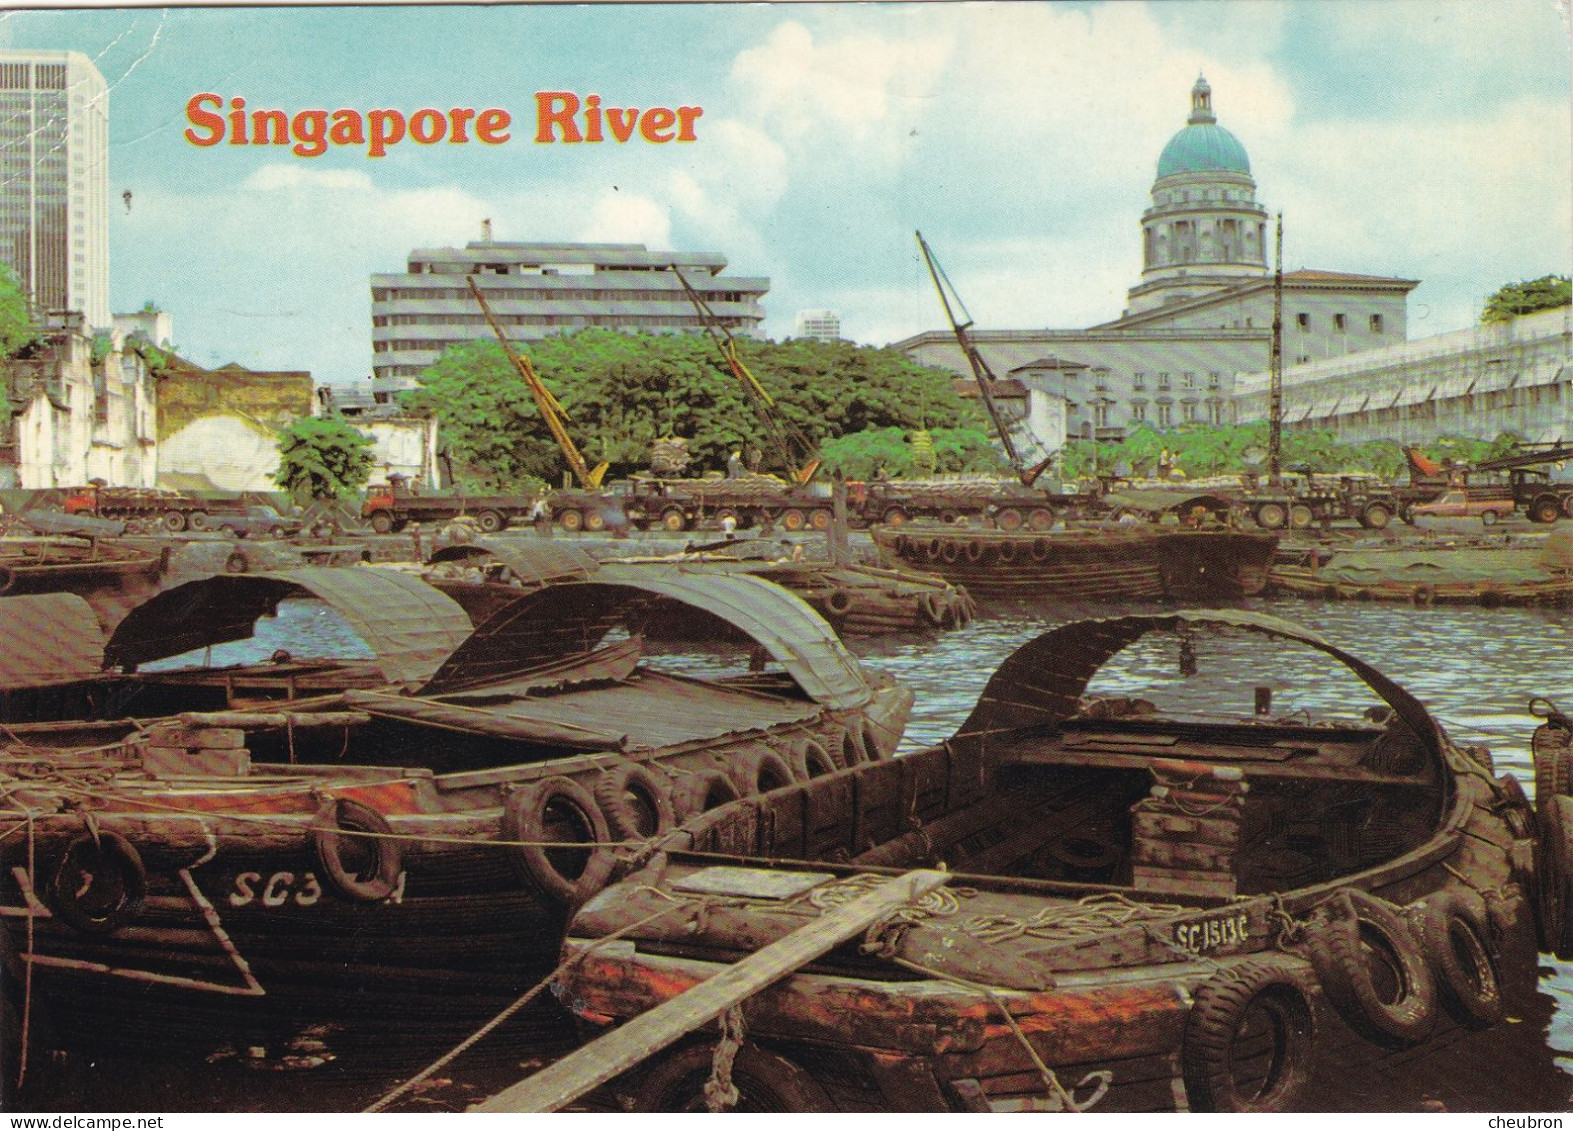 SINGAPOUR. SINGAPOUR ( ENVOYE DE). " SINGAPORE - RIVER ". ANNEE 1985 + TEXTE + TIMBRE - Singapore